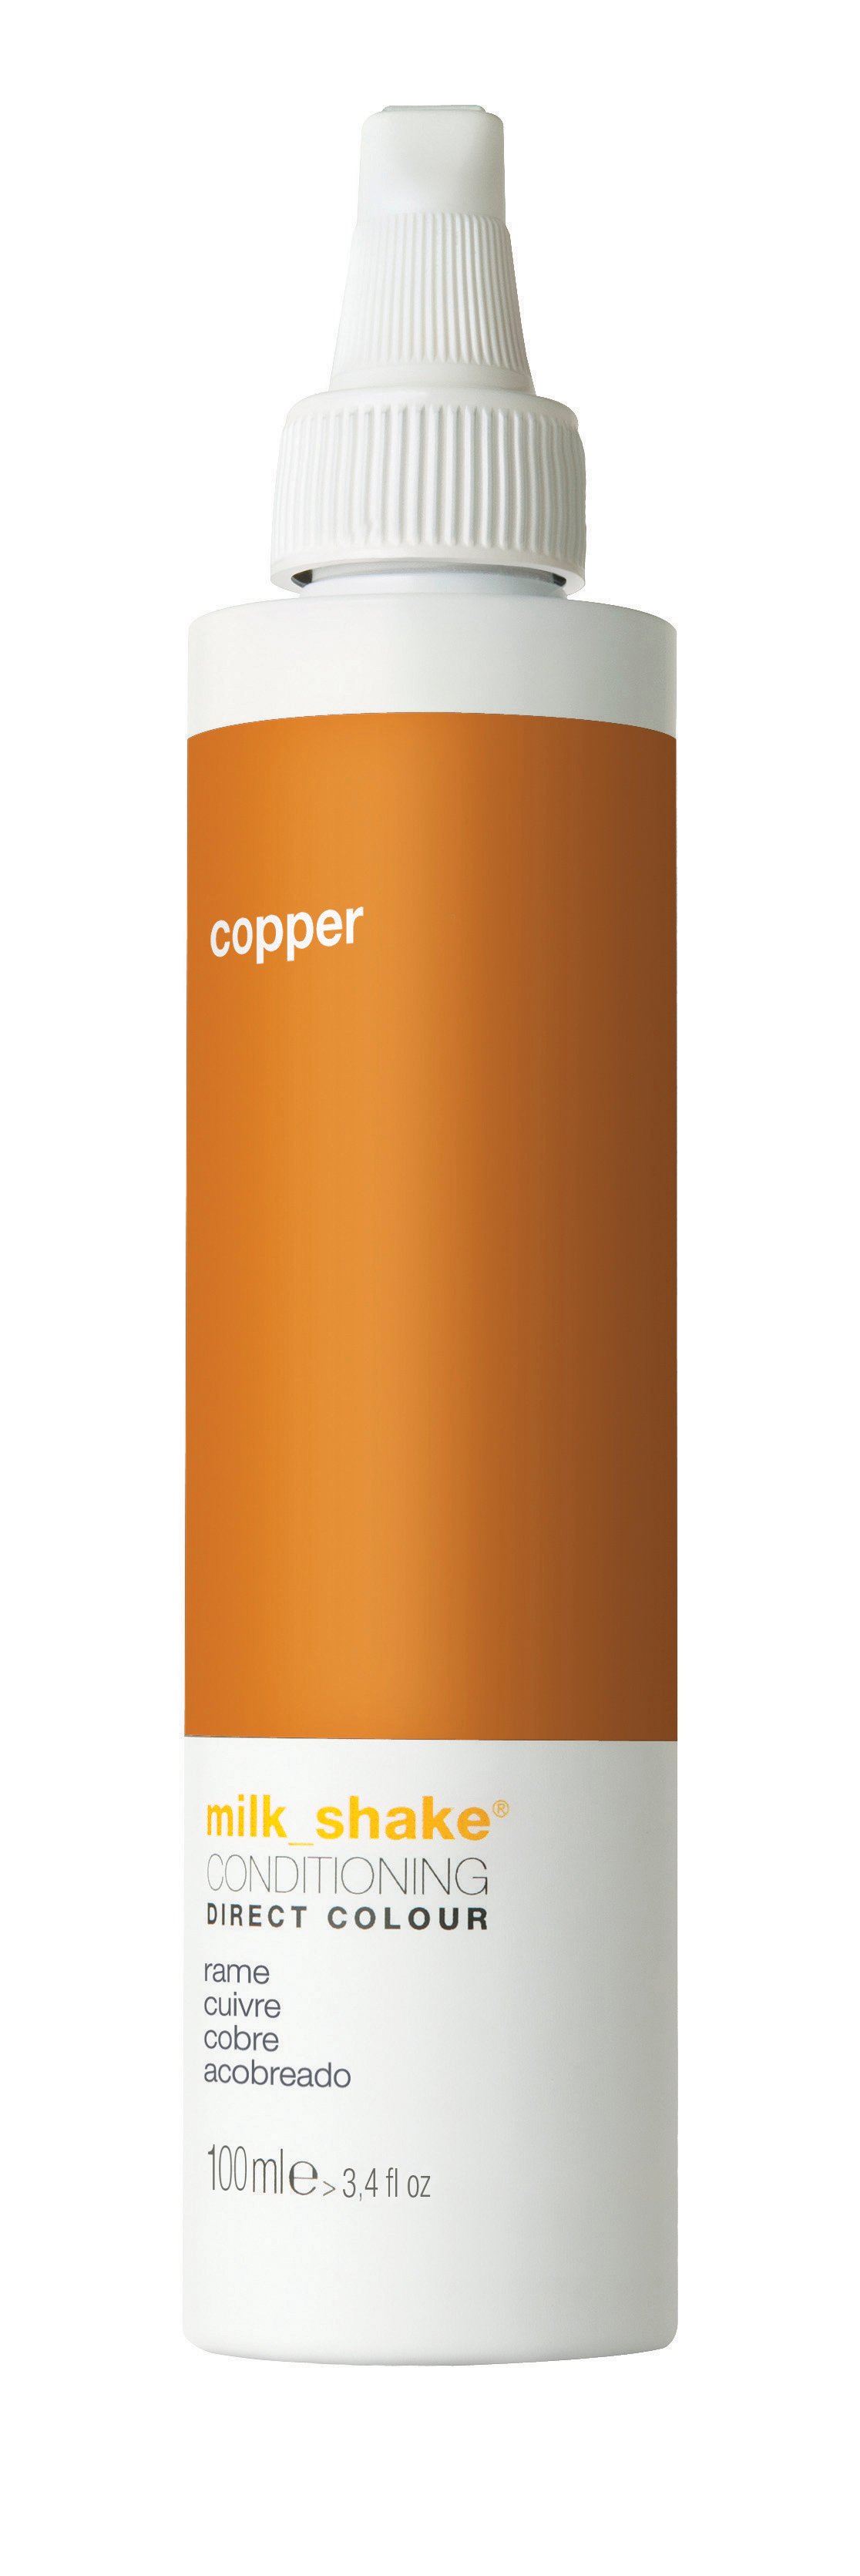 milk_shake - Direct Color 100 ml - Copper